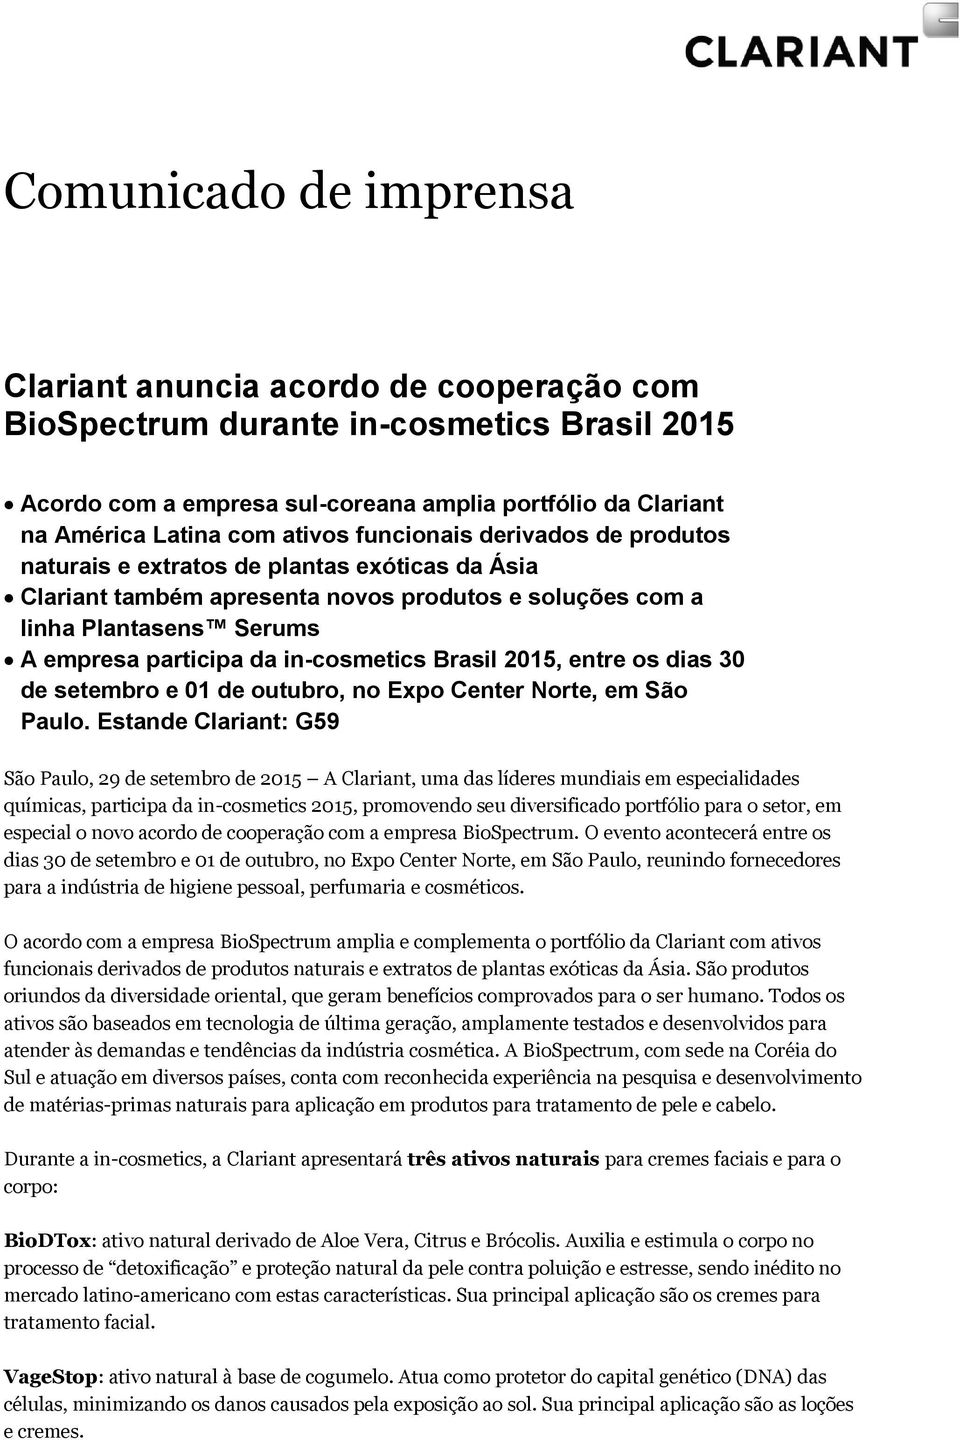 in-cosmetics Brasil 2015, entre os dias 30 de setembro e 01 de outubro, no Expo Center Norte, em São Paulo.